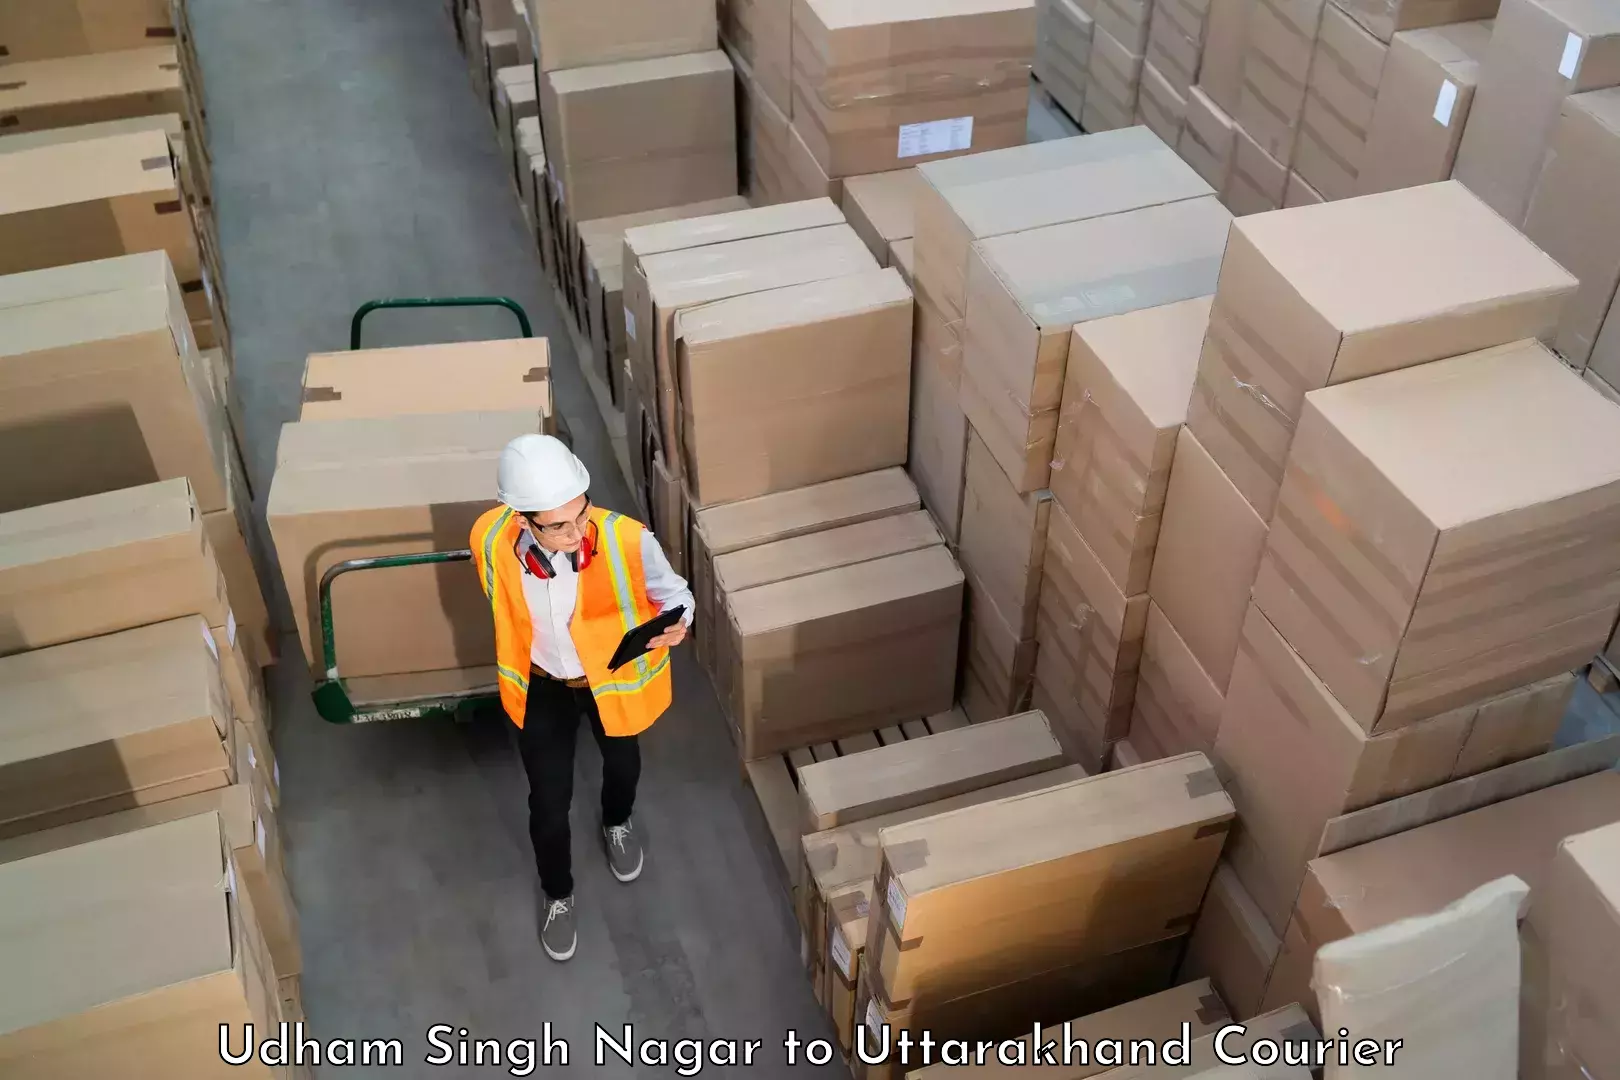 Luggage delivery network Udham Singh Nagar to Dehradun